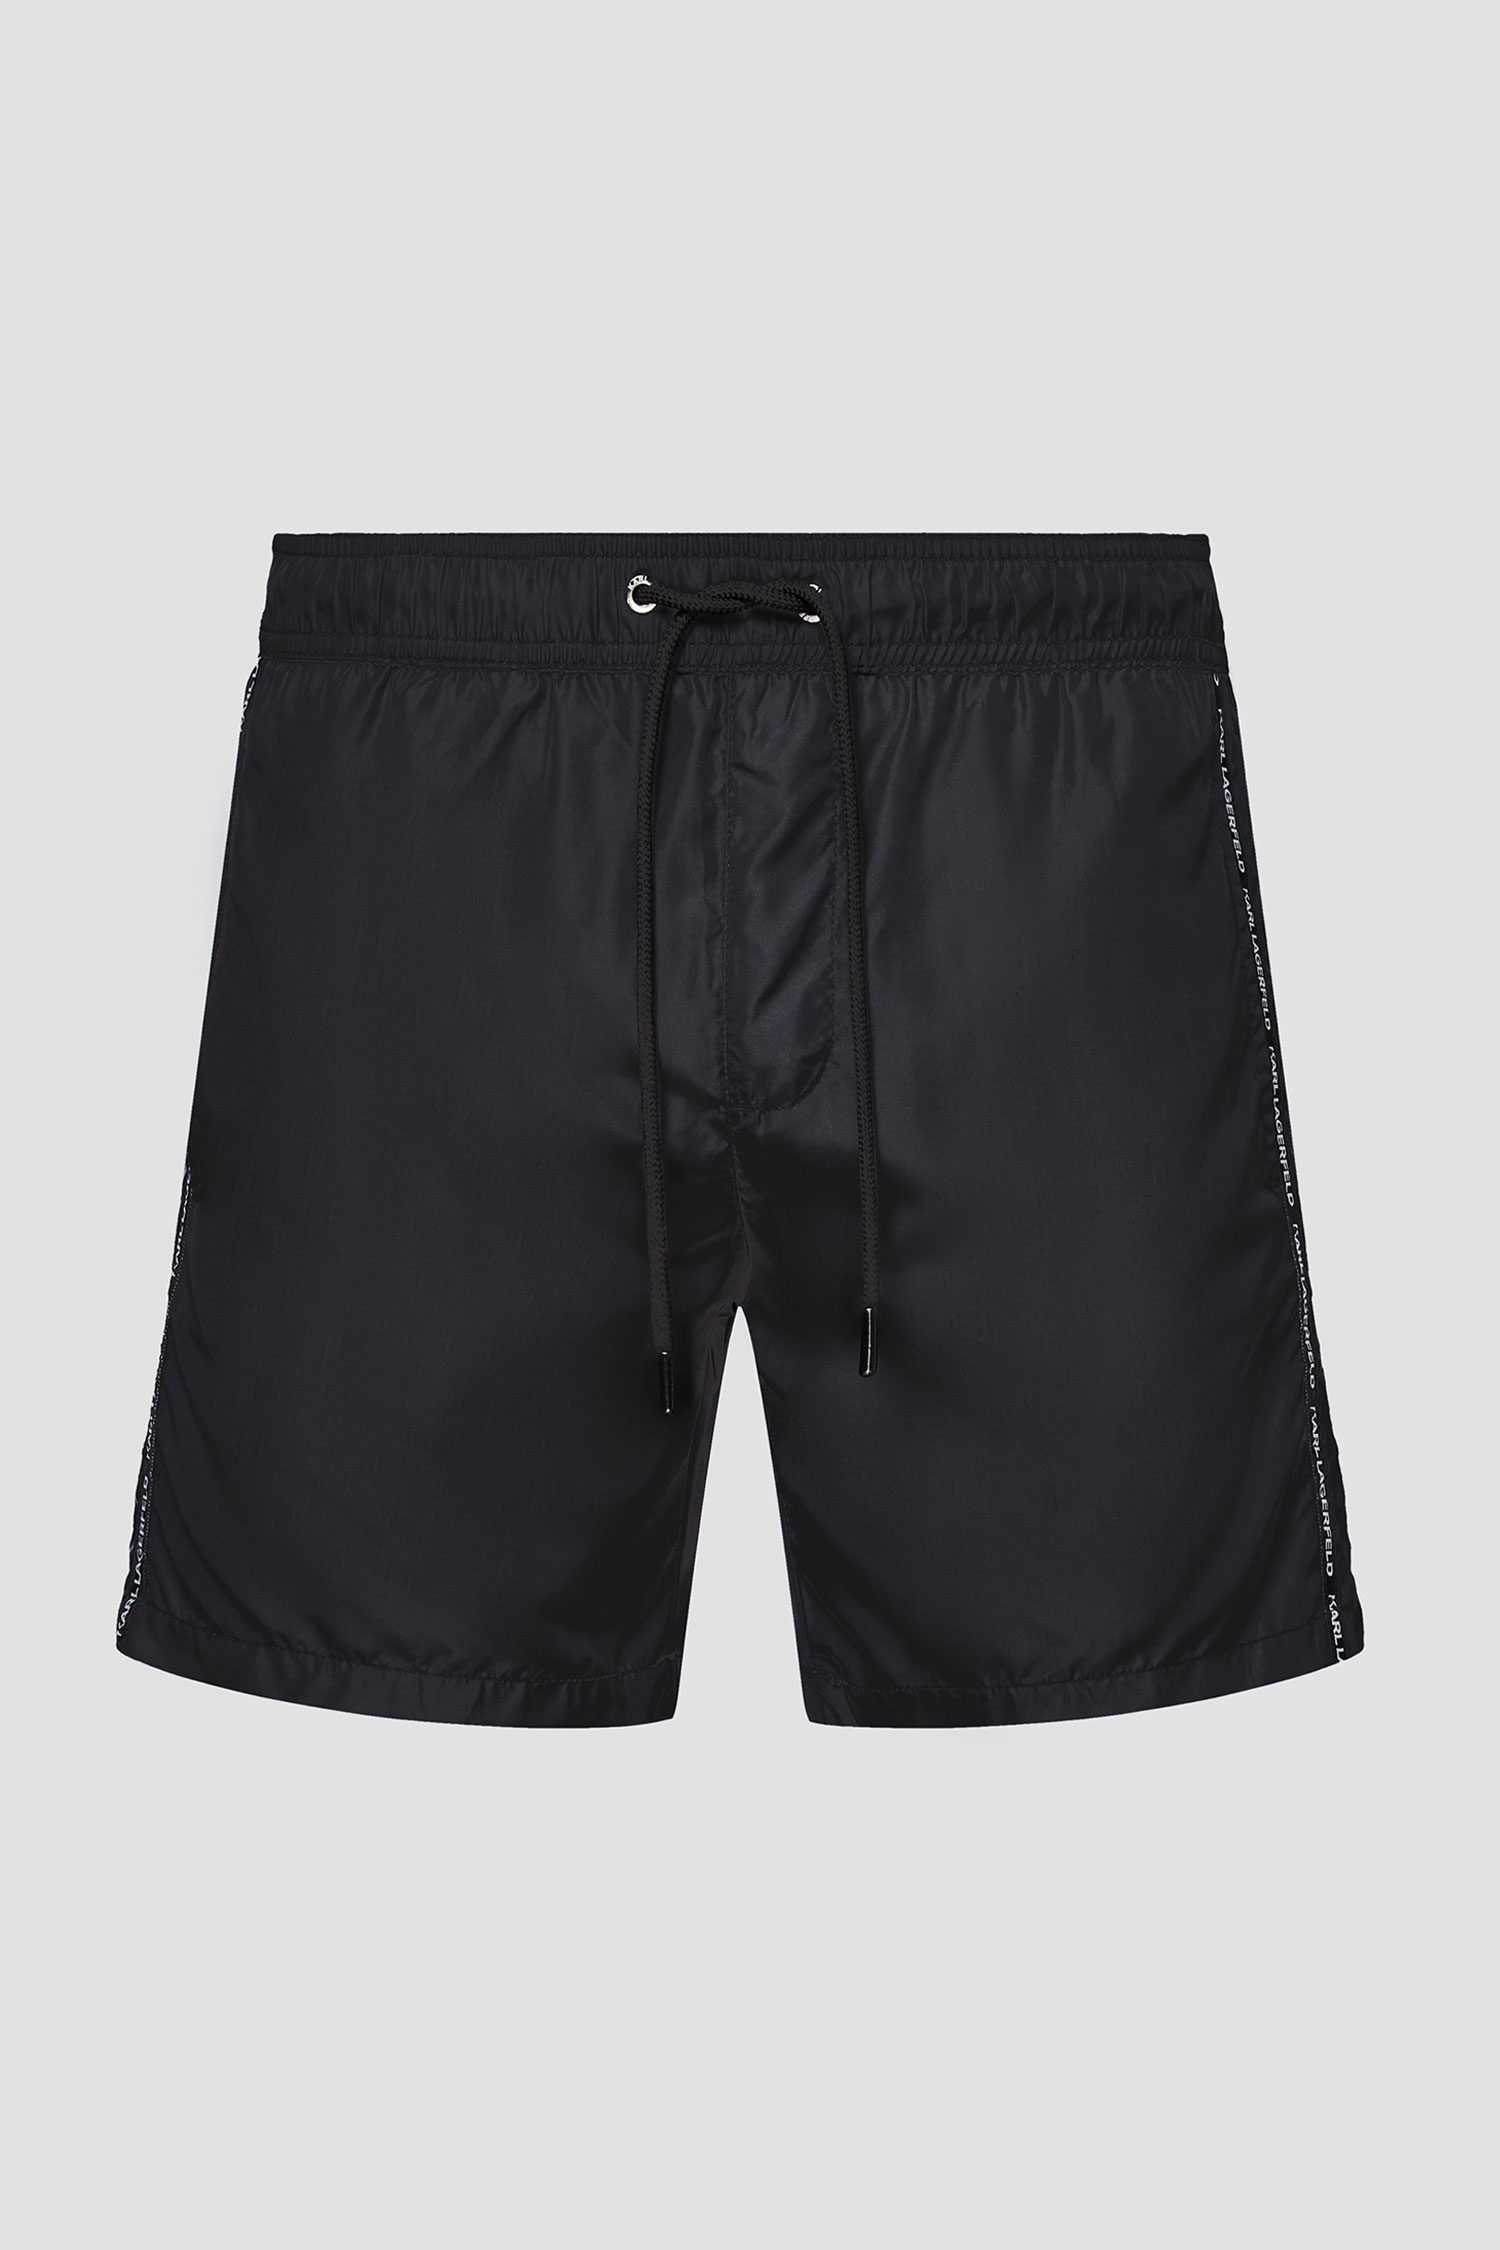 Мужские черные плавательные шорты Karl Lagerfeld KL21MBM03;BLACK